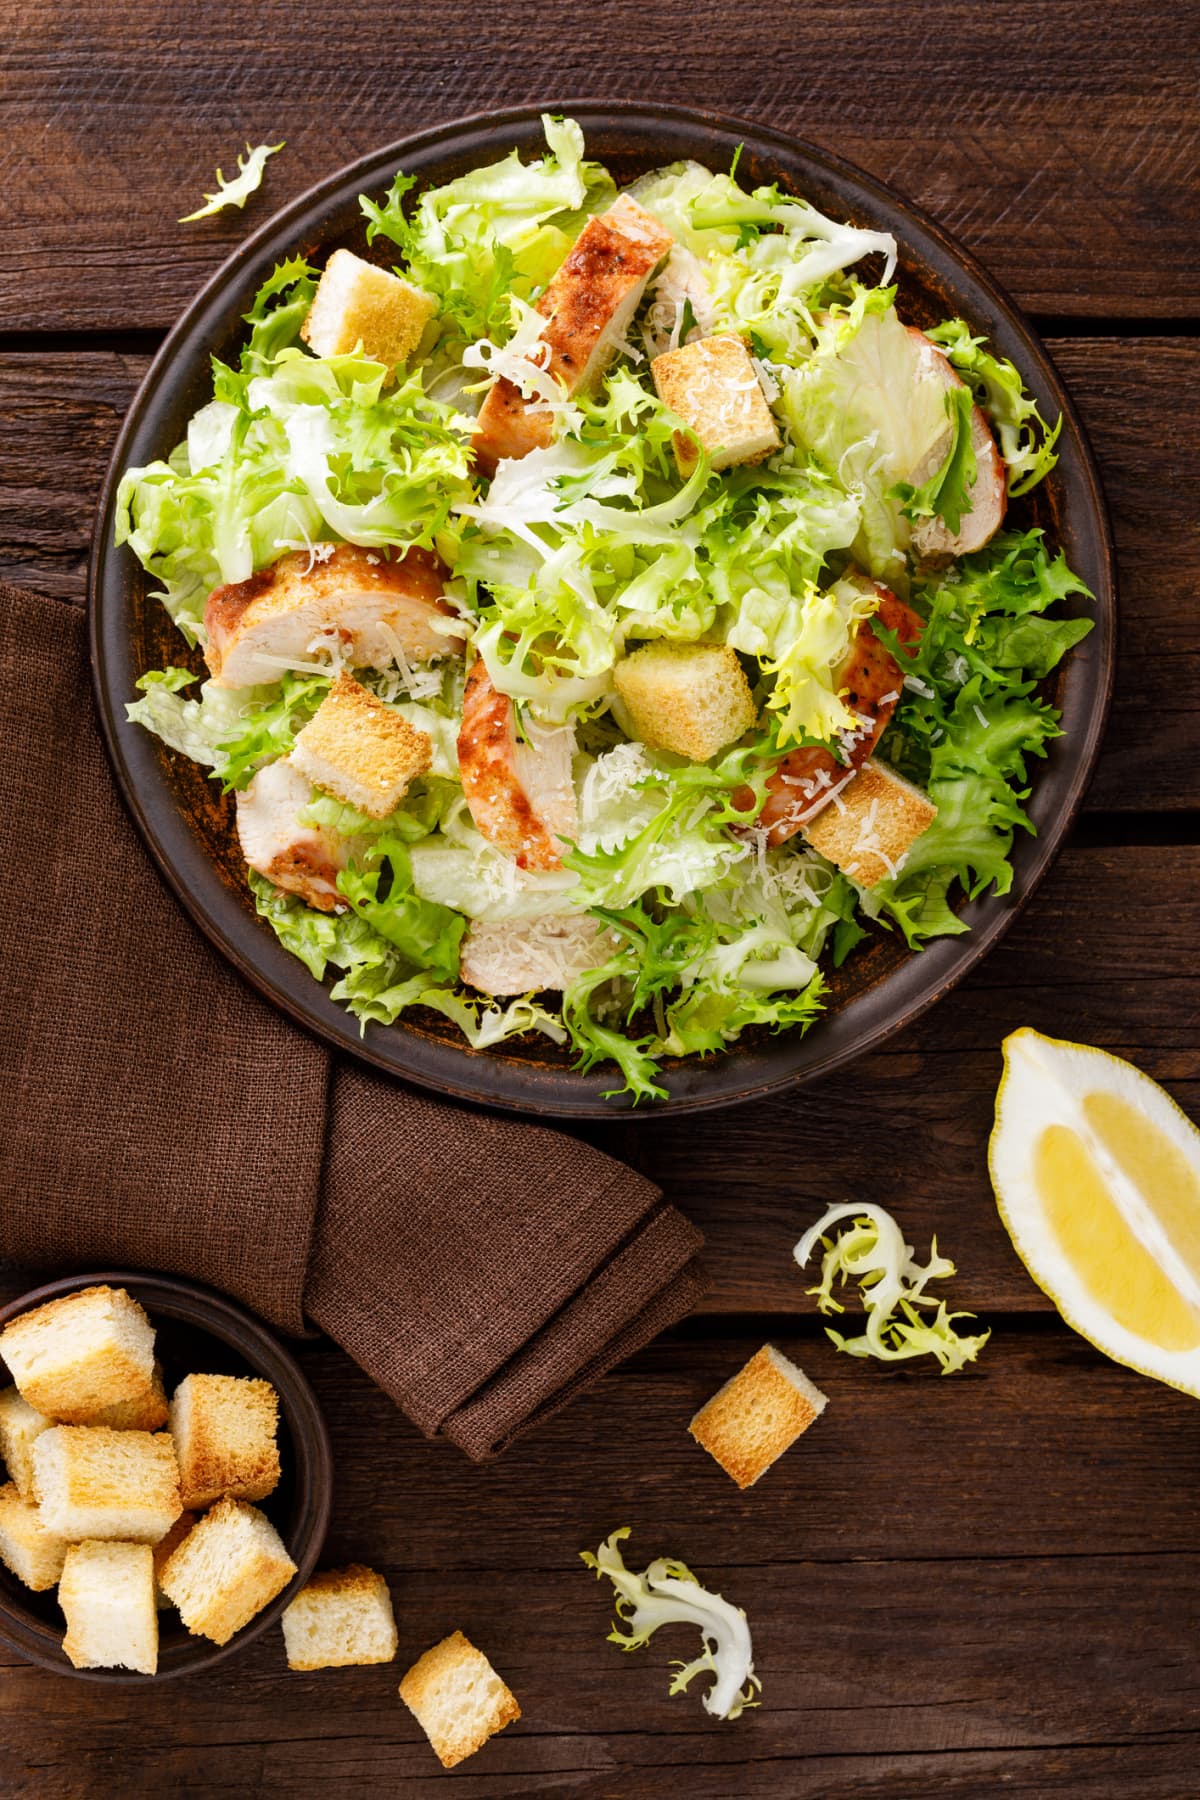 A Caesar salad on a table